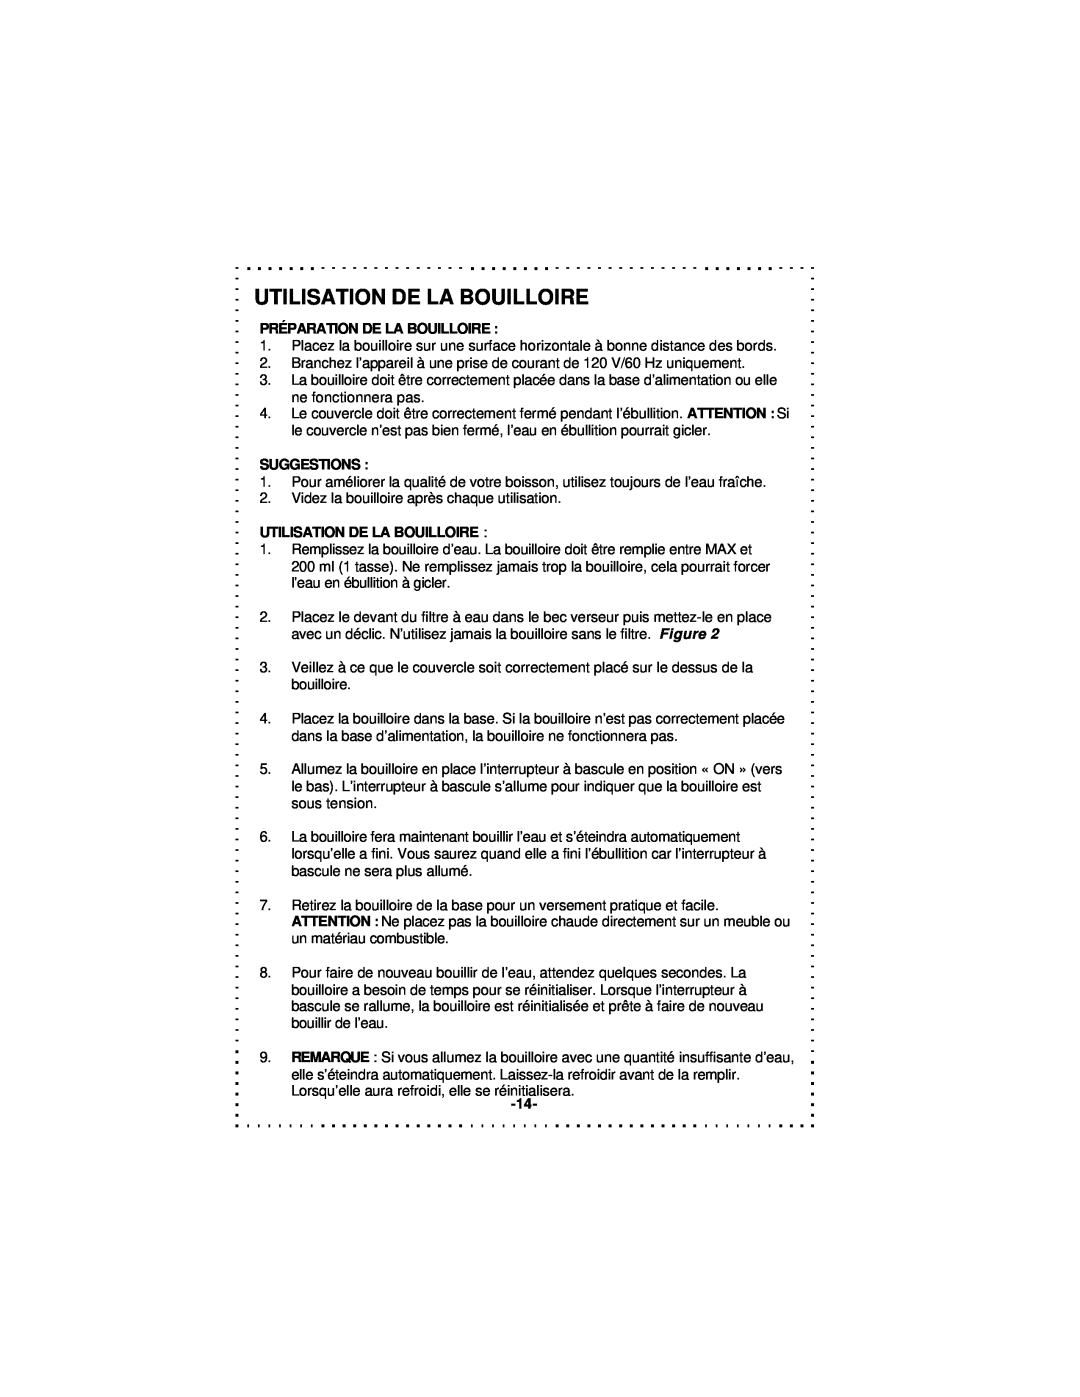 DeLonghi DSJ900 instruction manual Utilisation De La Bouilloire 